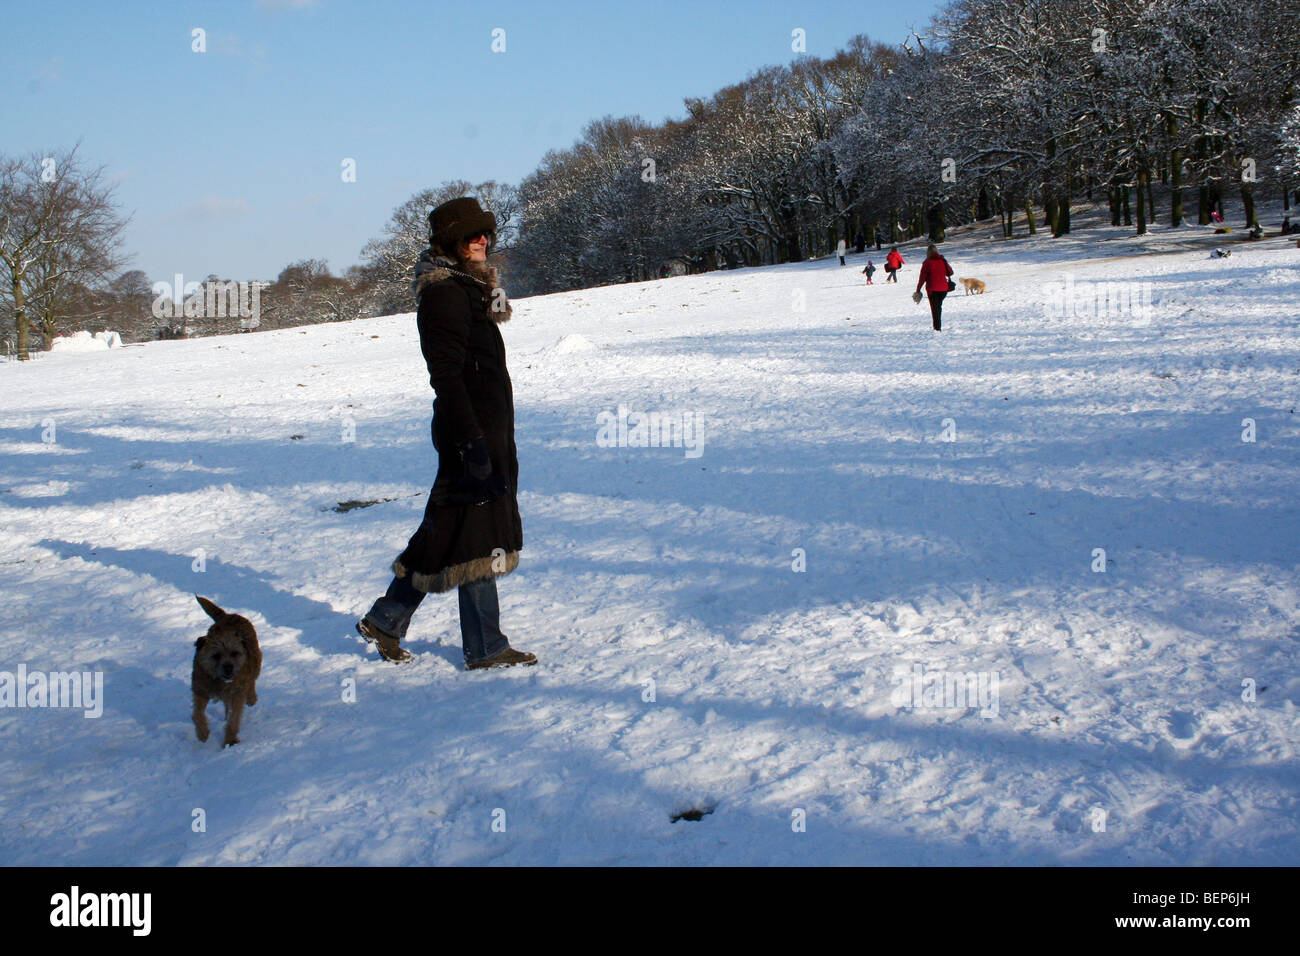 woman walking in snowy park Stock Photo